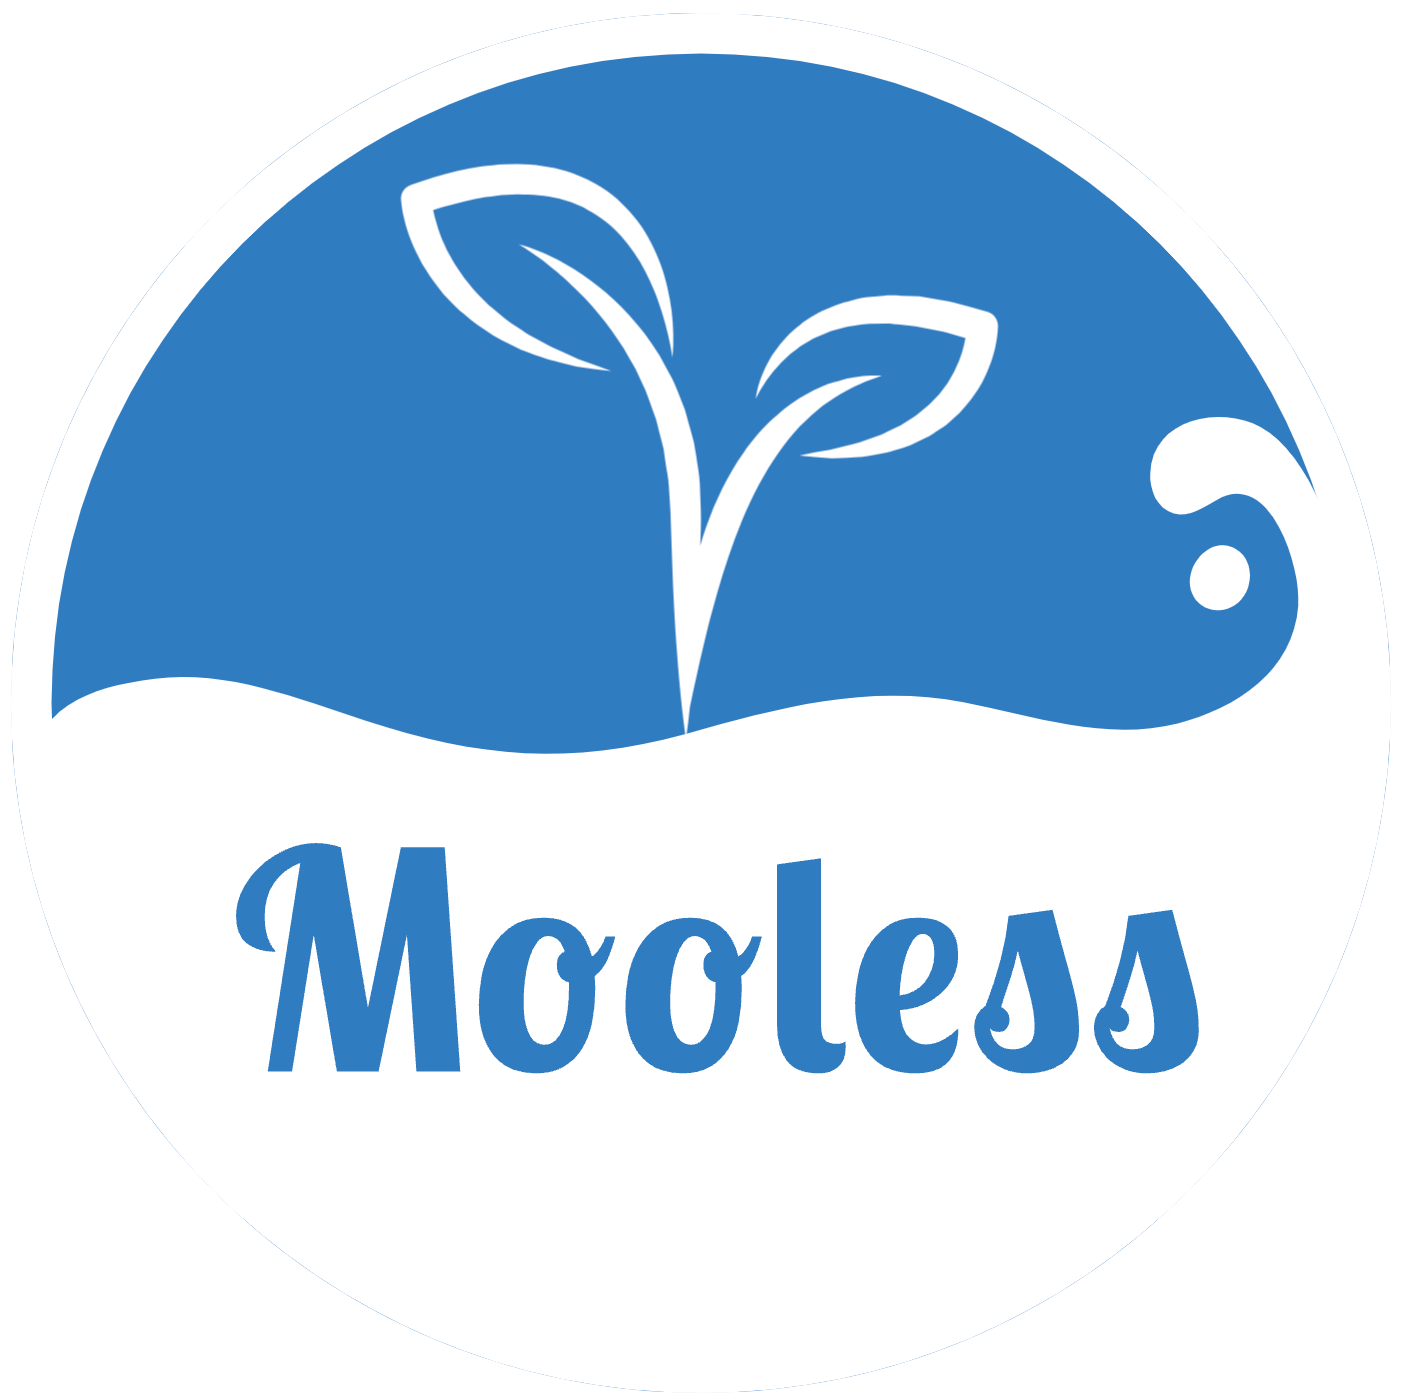 Mooless